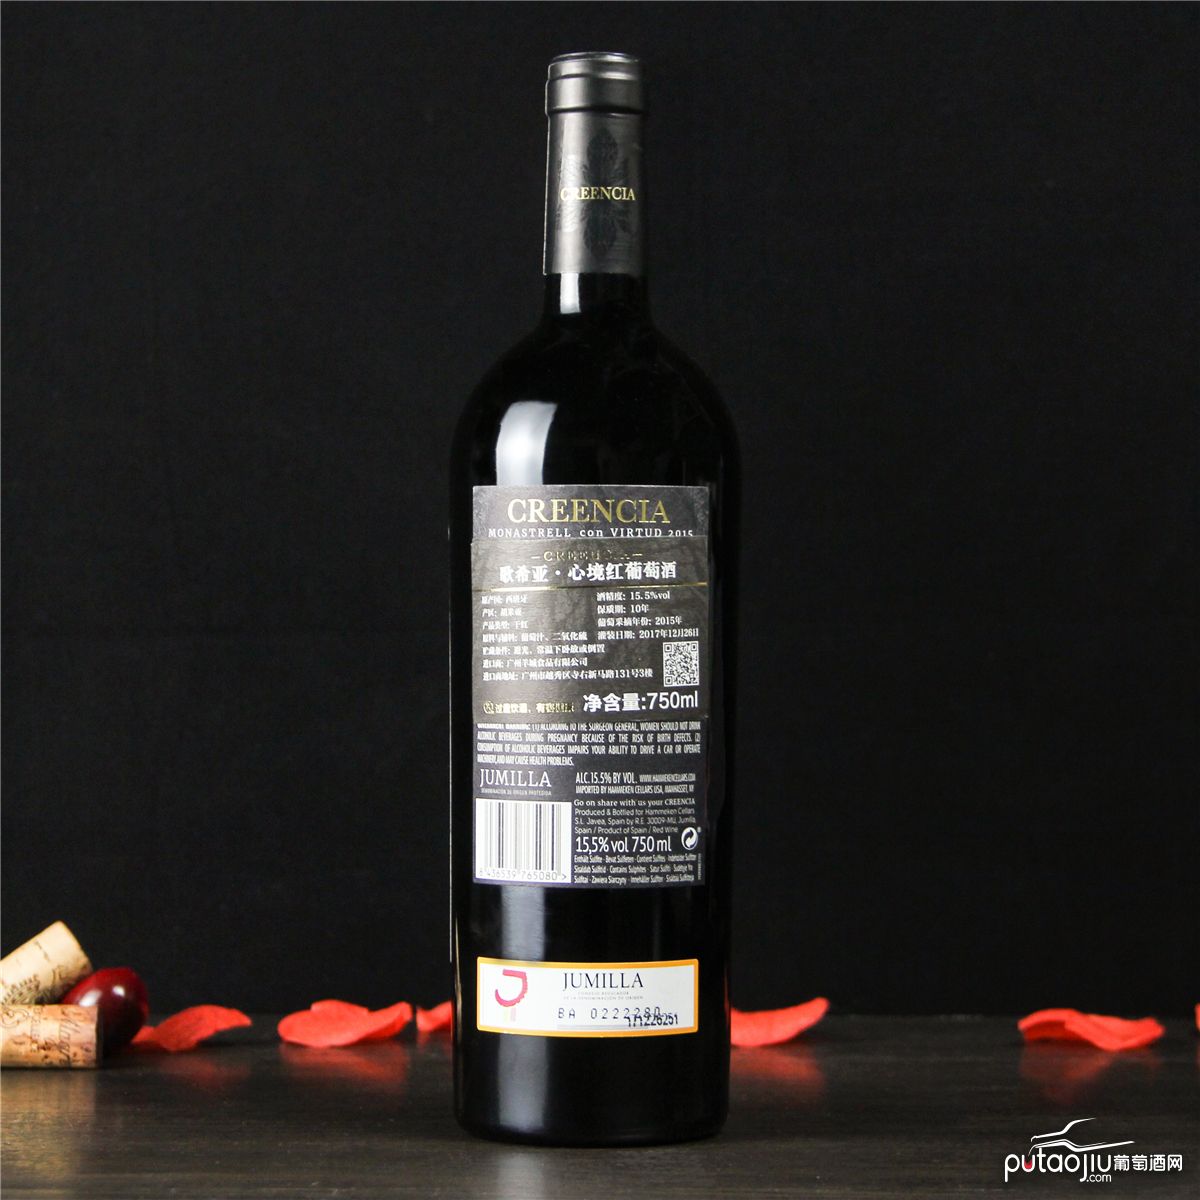 西班牙胡米利亚歌希亚・心境干红葡萄酒红酒